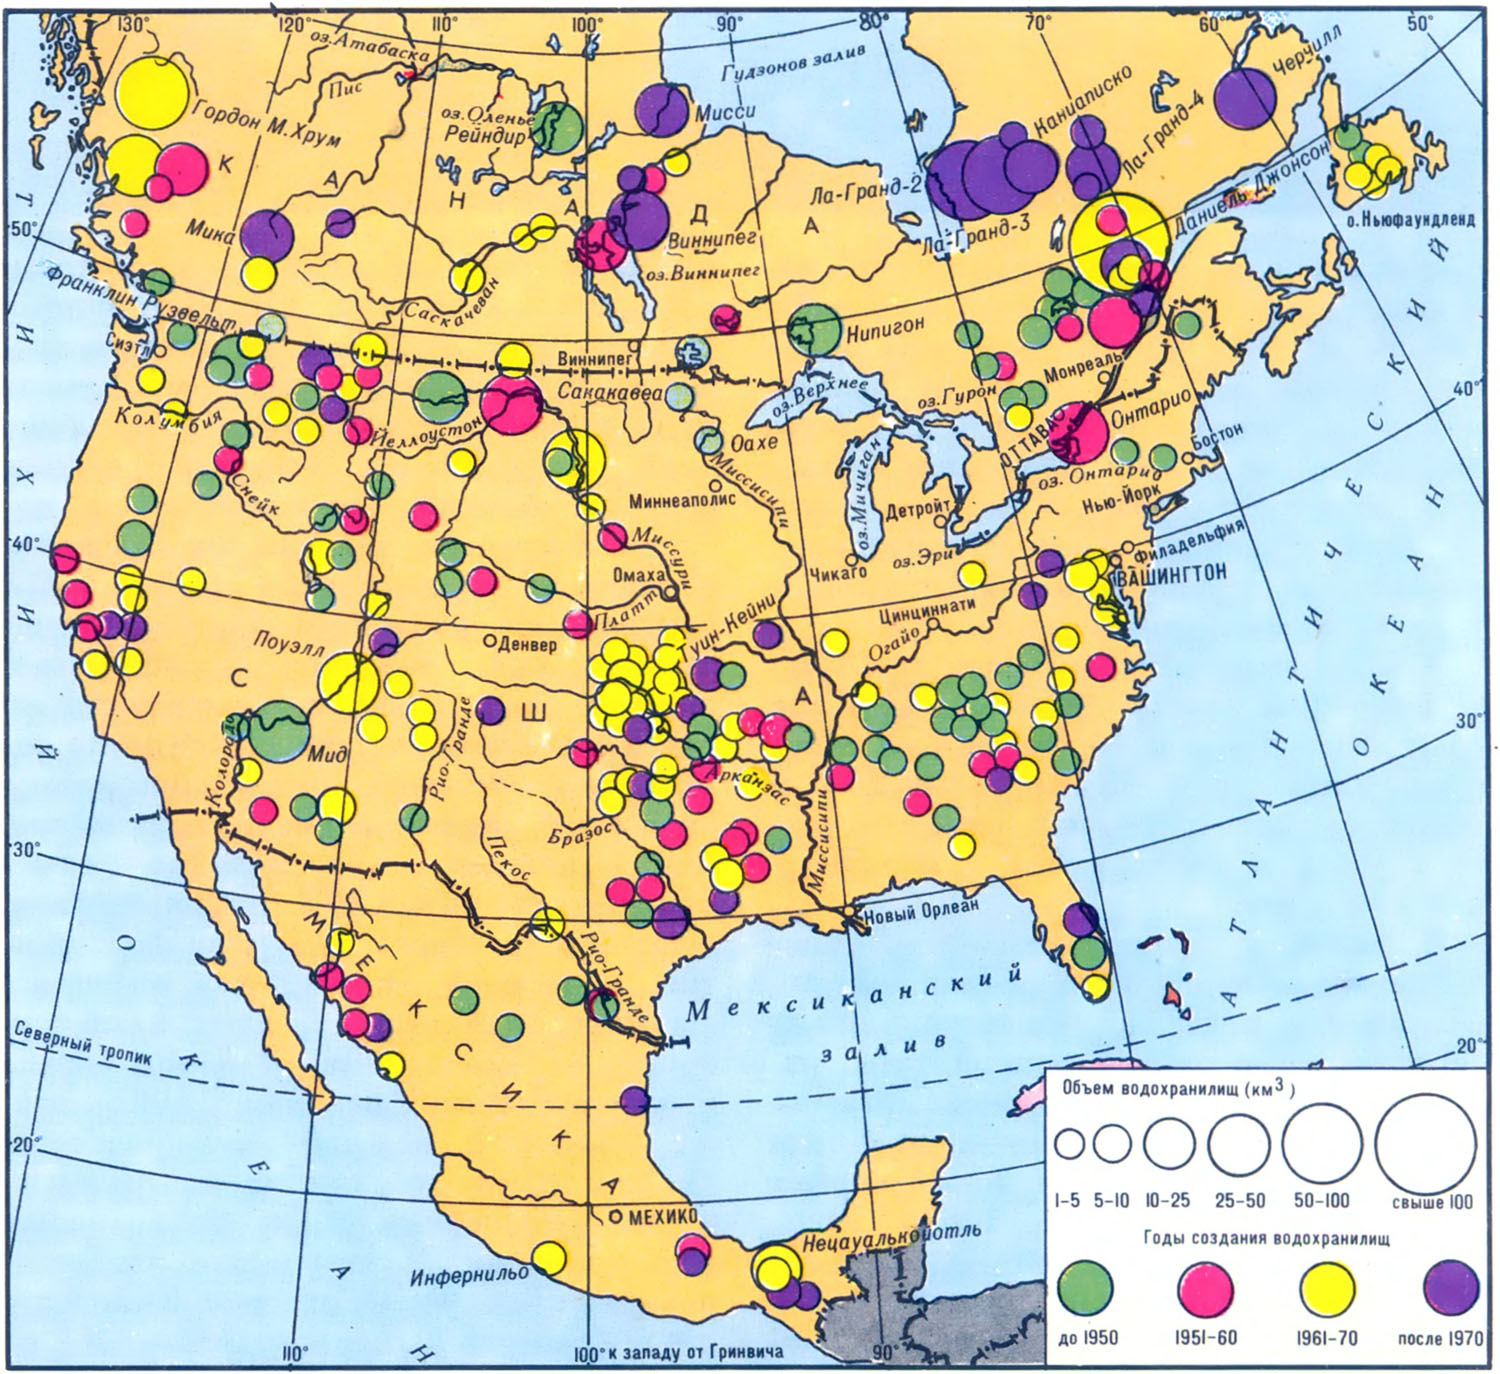 Ископаемые северной америки на контурной карте. Карта промышленности Северной Америки. Основные полезные ископаемые США на карте. Карта полезных ископаемых США И Канады. Полезные ископаемые Северной Америки на карте.